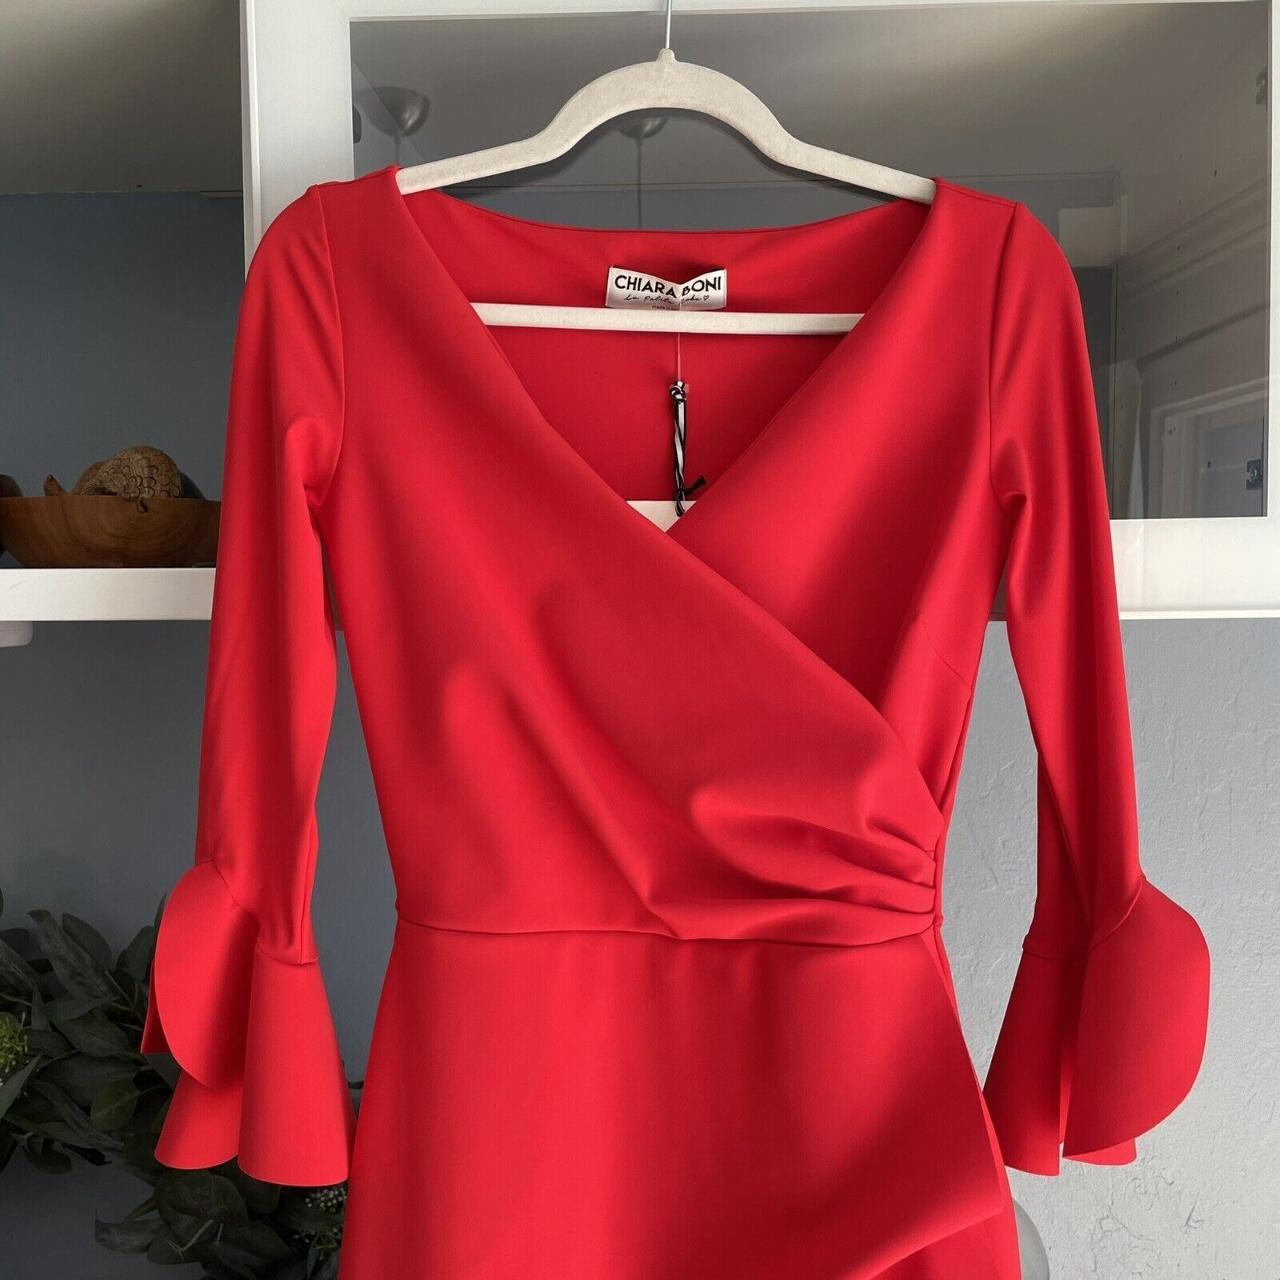 Chiara Boni La Petite Robe Women's Red Dress (2)